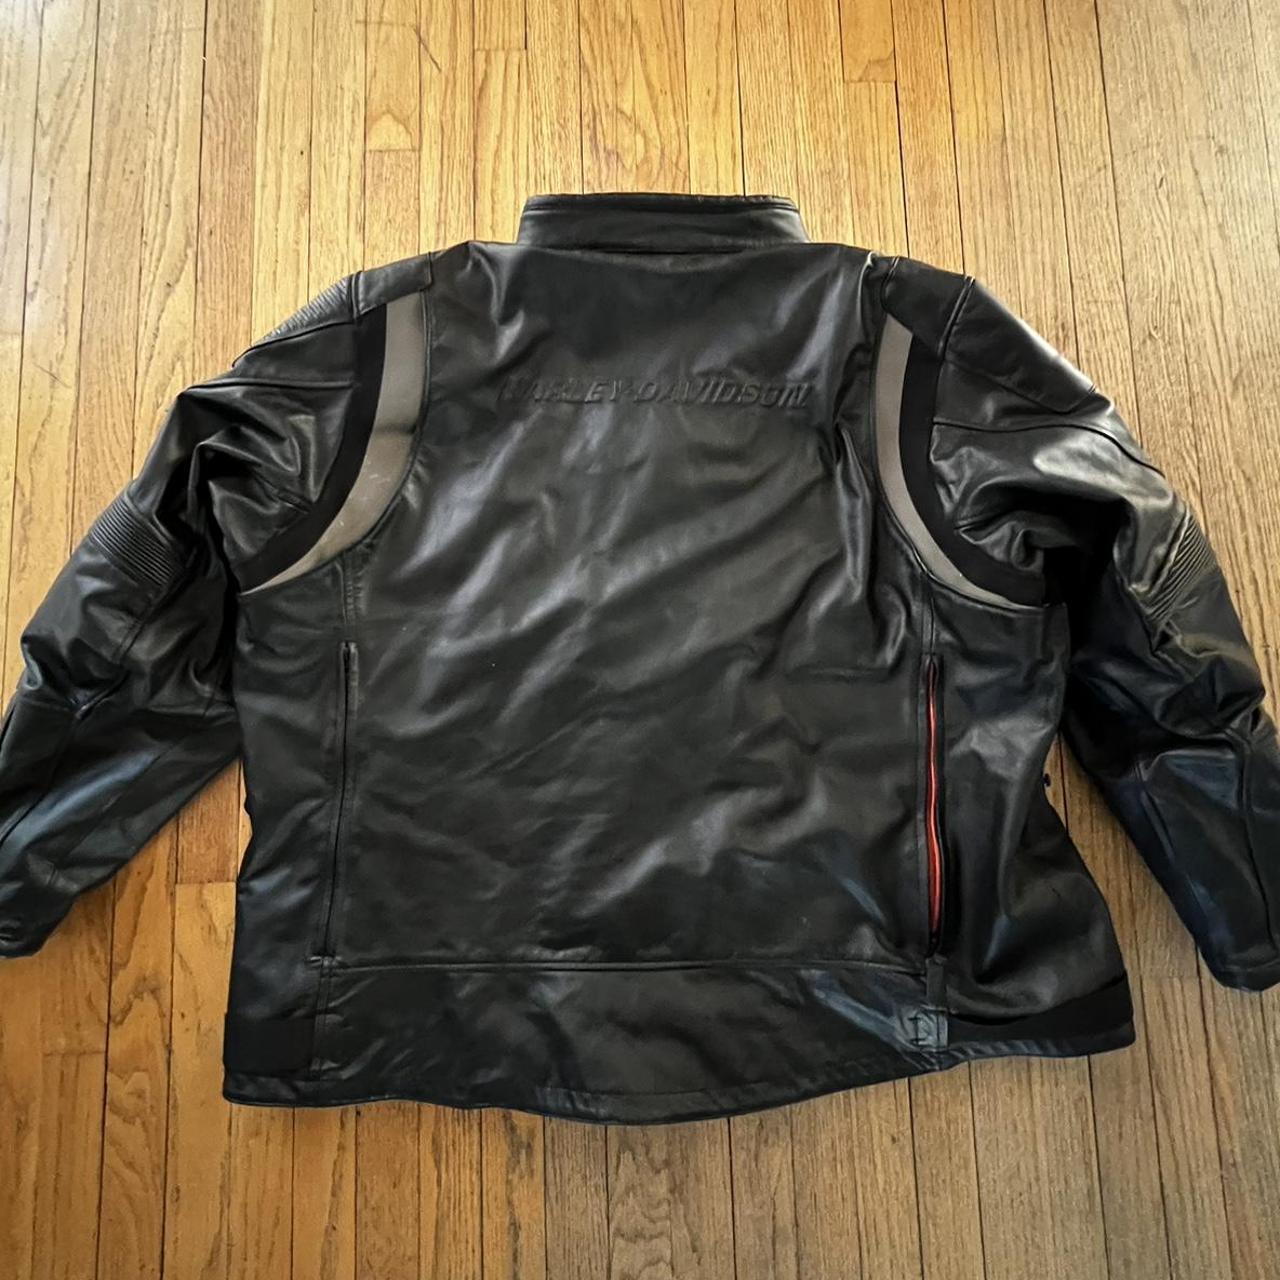 Harley Davidson FXRG Leather Jacket 5XL - Depop